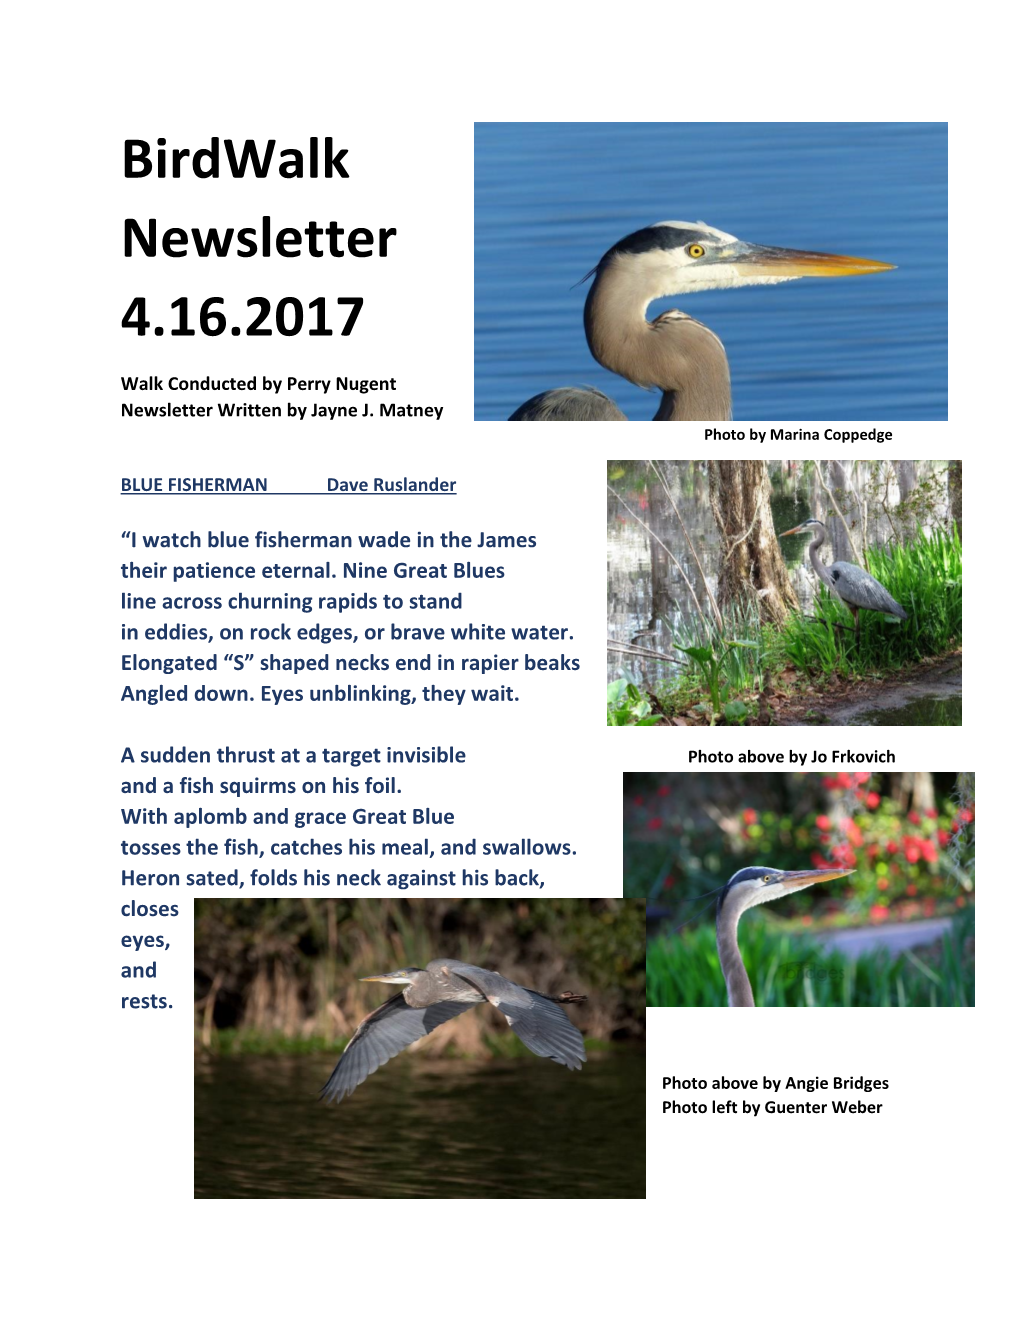 Birdwalk Newsletter 4.16.2017